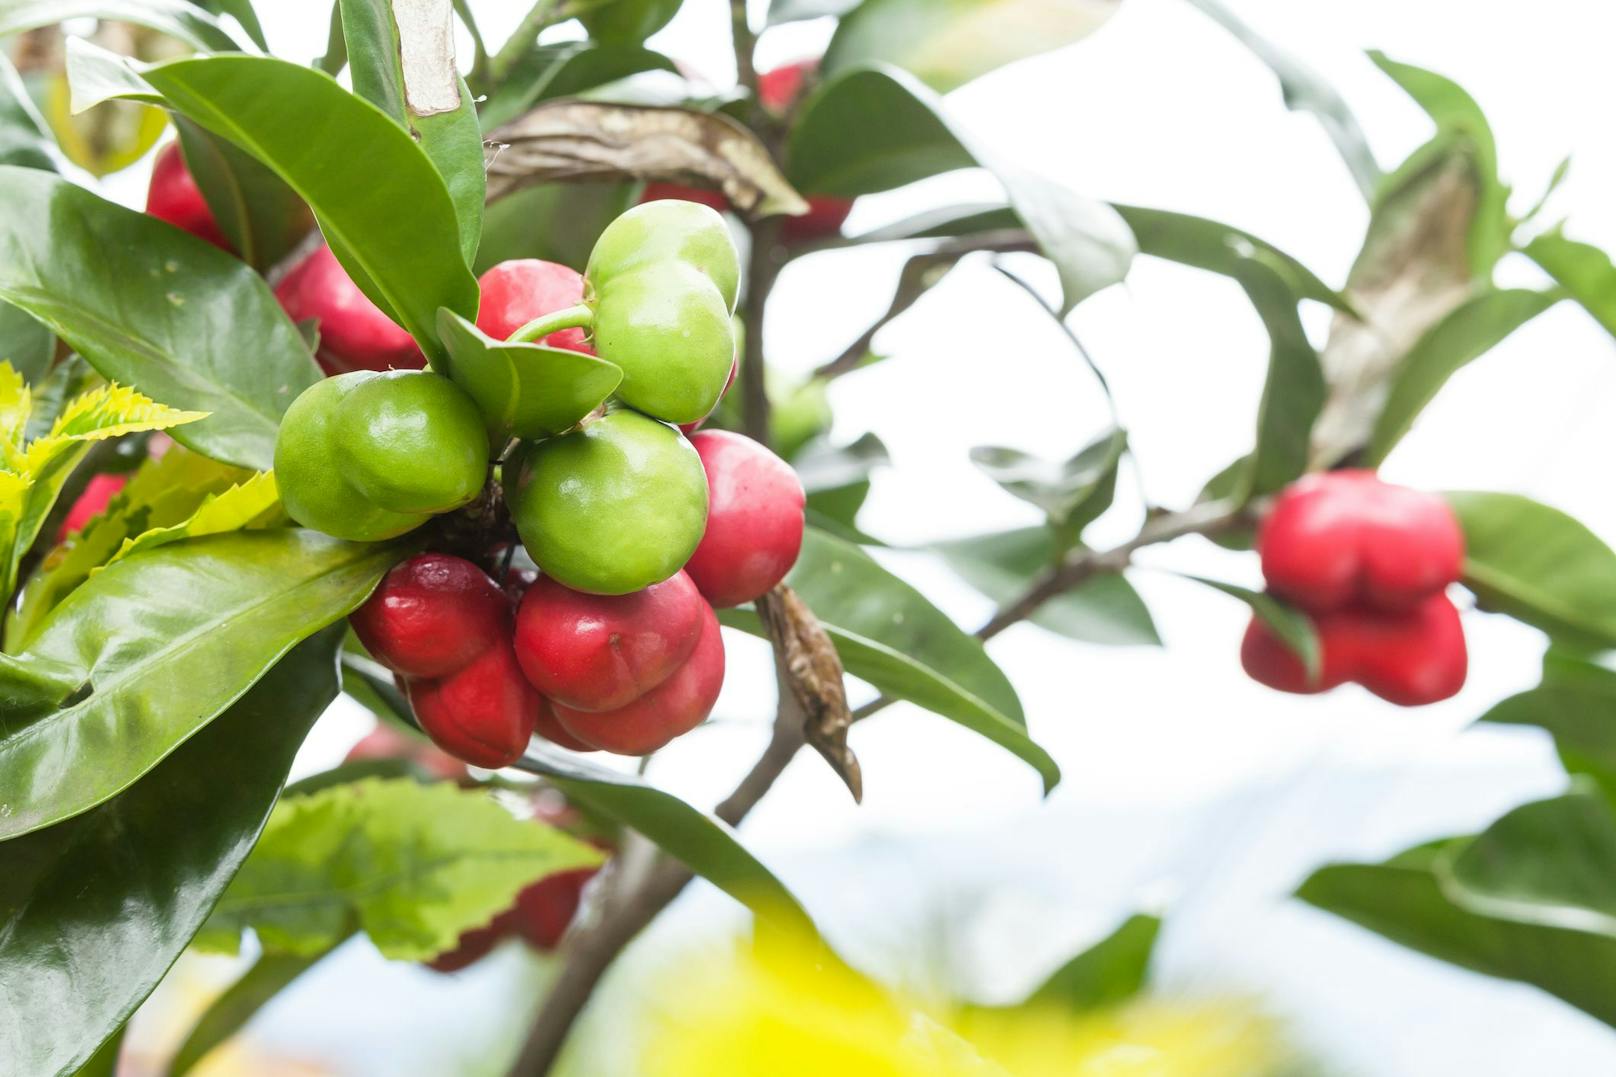 Die Kinder hatten die Früchte des hochgiftigen Schellenbaums (<em>Thevetia ahouai</em>) für kleine Äpfel gehalten und gegessen.